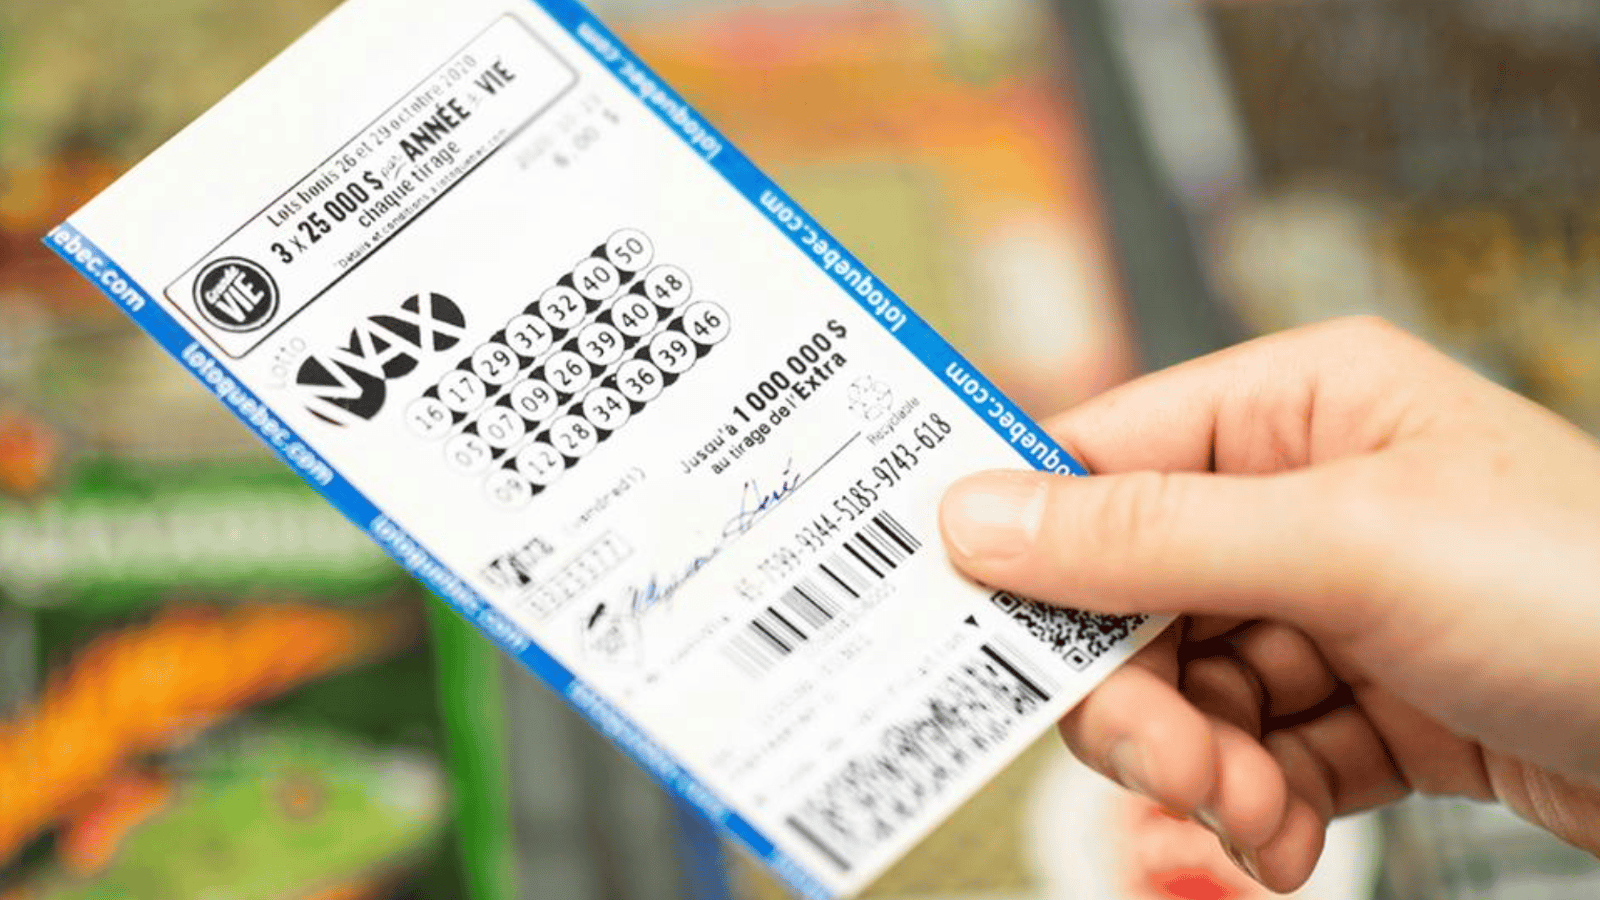 La cagnotte du Lotto-Max augmente encore pour le tirage de vendredi